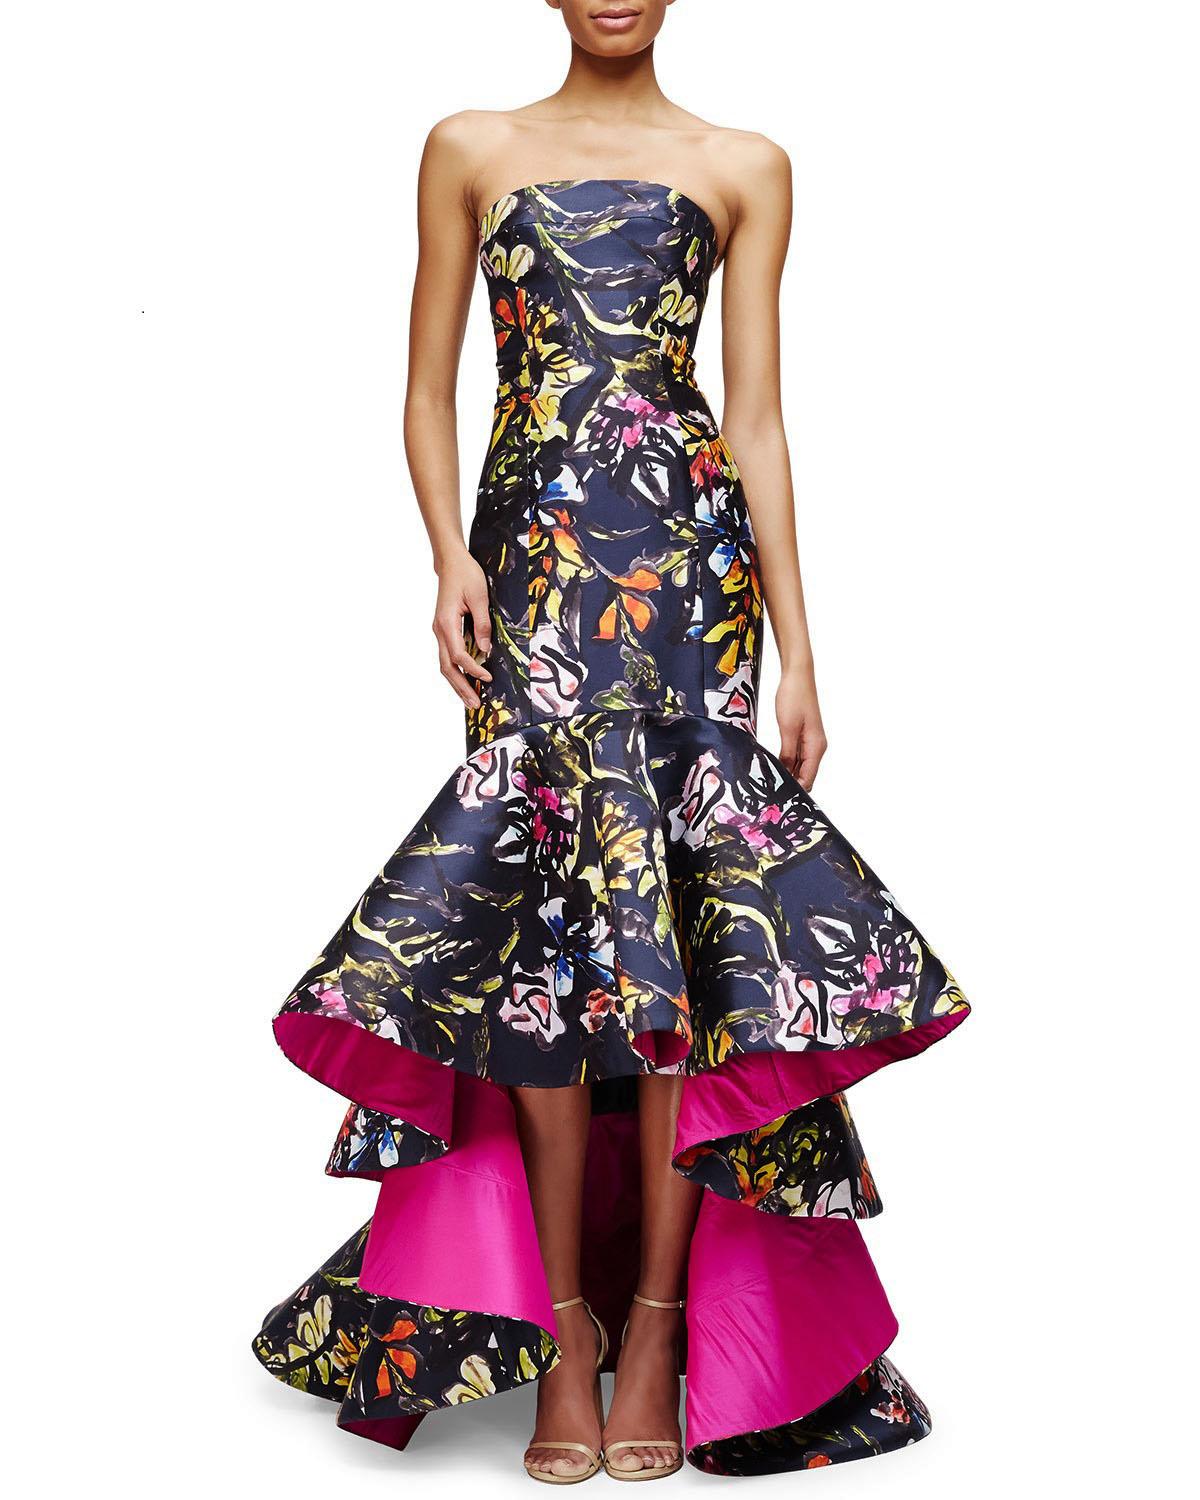 Oscar de la Renta PF 2015 Floral Printed High-Low Corset Dress Gown US size 6 For Sale 2